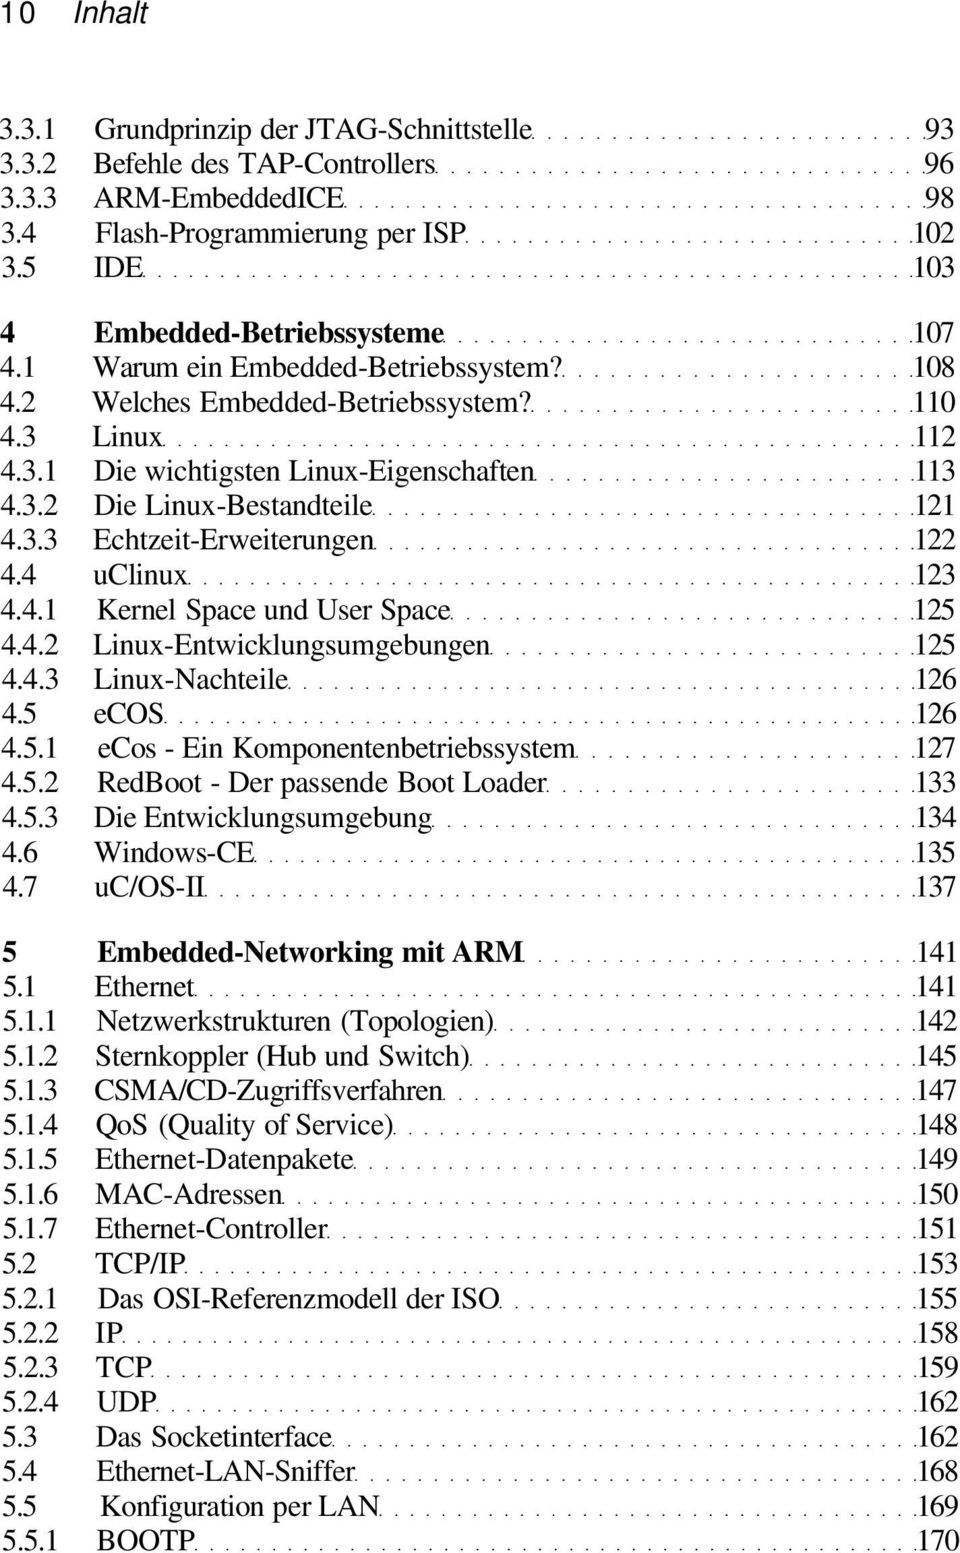 4 uclinux 123 4.4.1 Kernel Space und User Space 125 4.4.2 Linux-Entwicklungsumgebungen 125 4.4.3 Linux-Nachteile 126 4.5 ecos 126 4.5.1 ecos - Ein Komponentenbetriebssystem 127 4.5.2 RedBoot - Der passende Boot Loader 133 4.